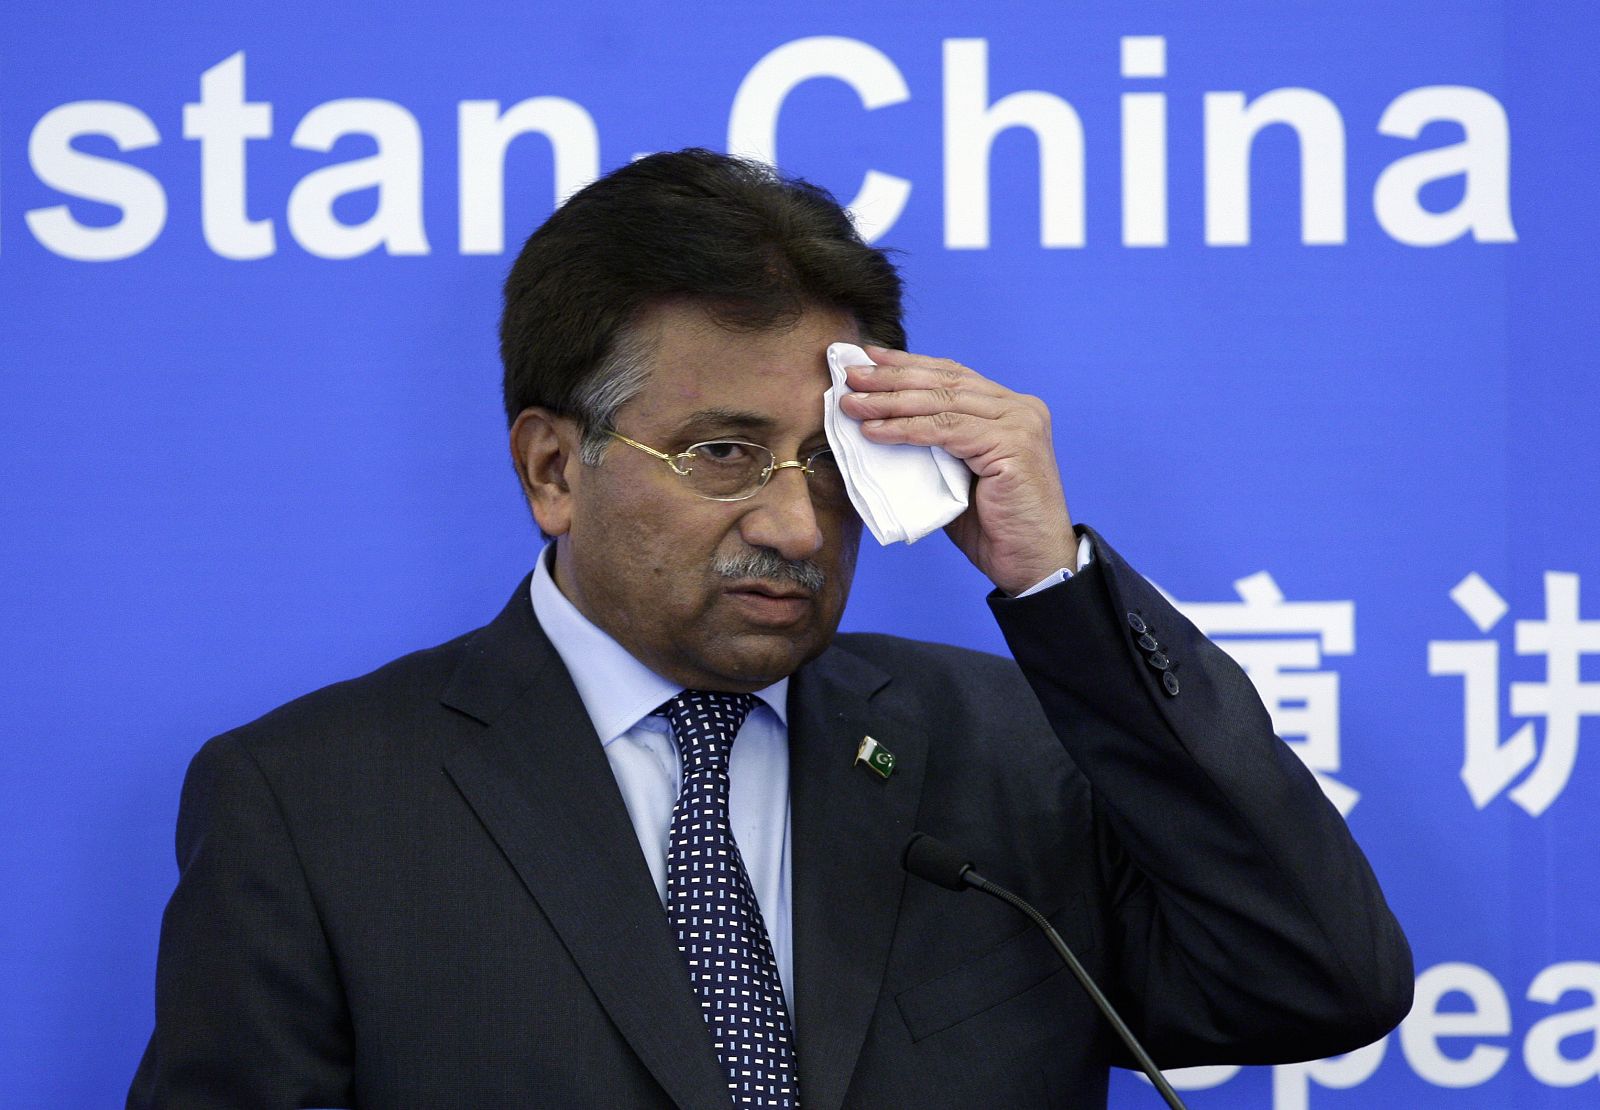 El presidente de Pakistán Pervez Musharraf dimite para evitar más inestabilidad en el país